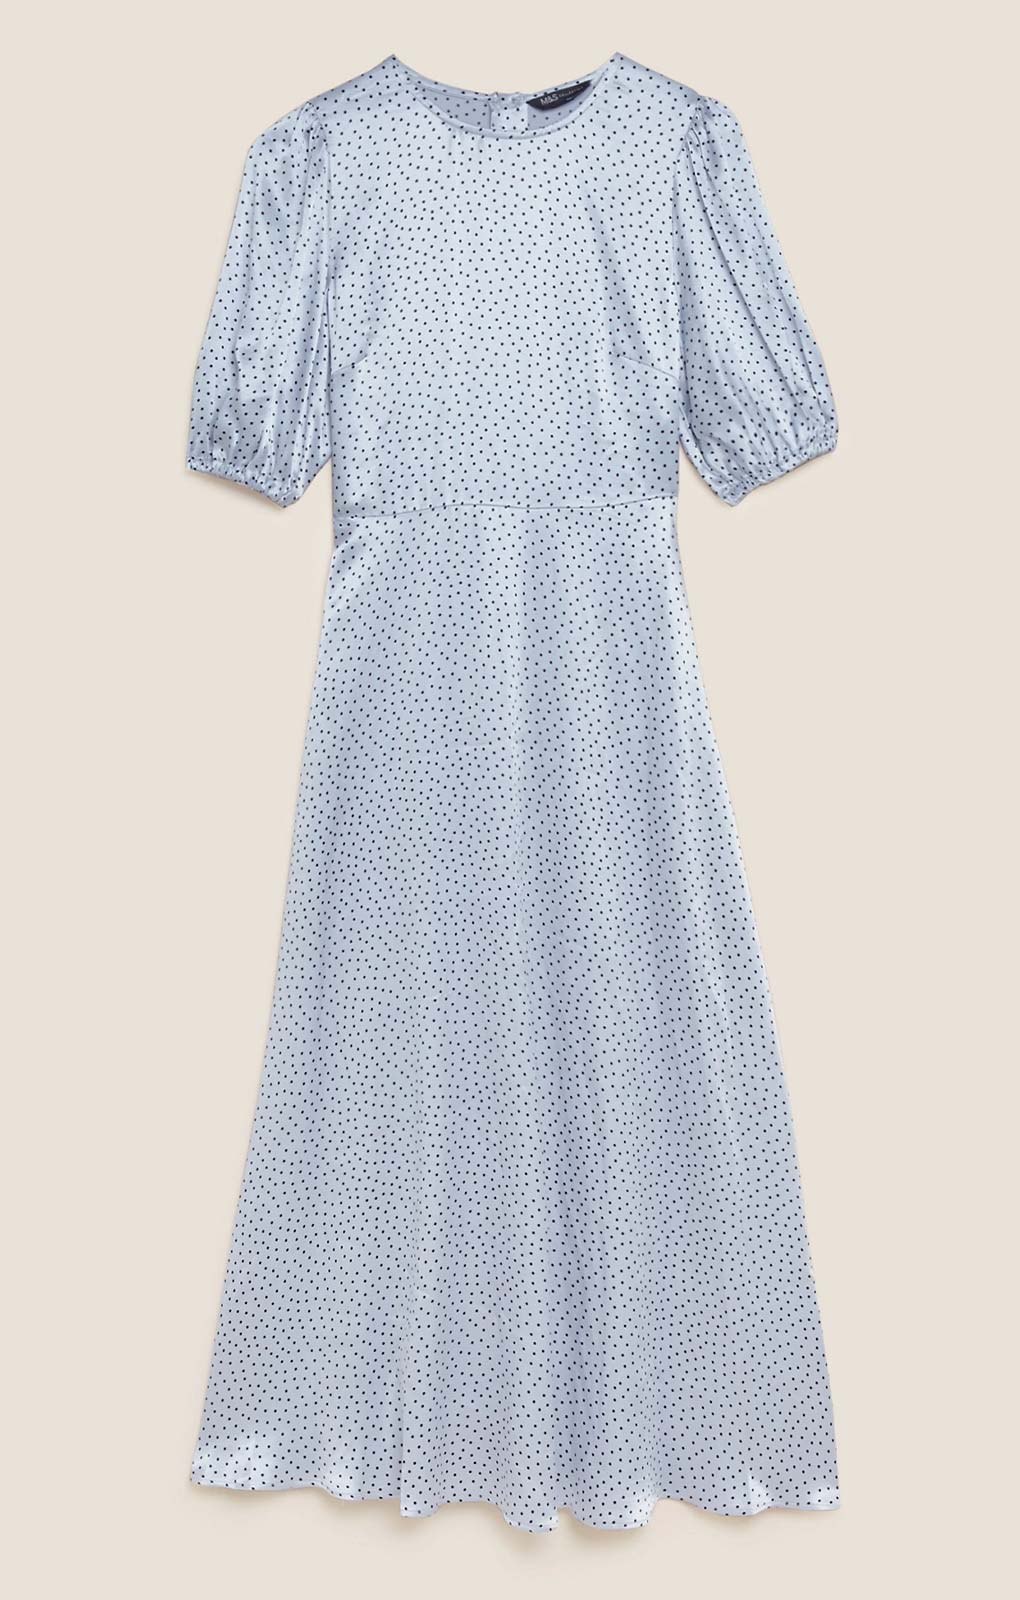 M&S Spot Satin Midaxi Tea Dress product image